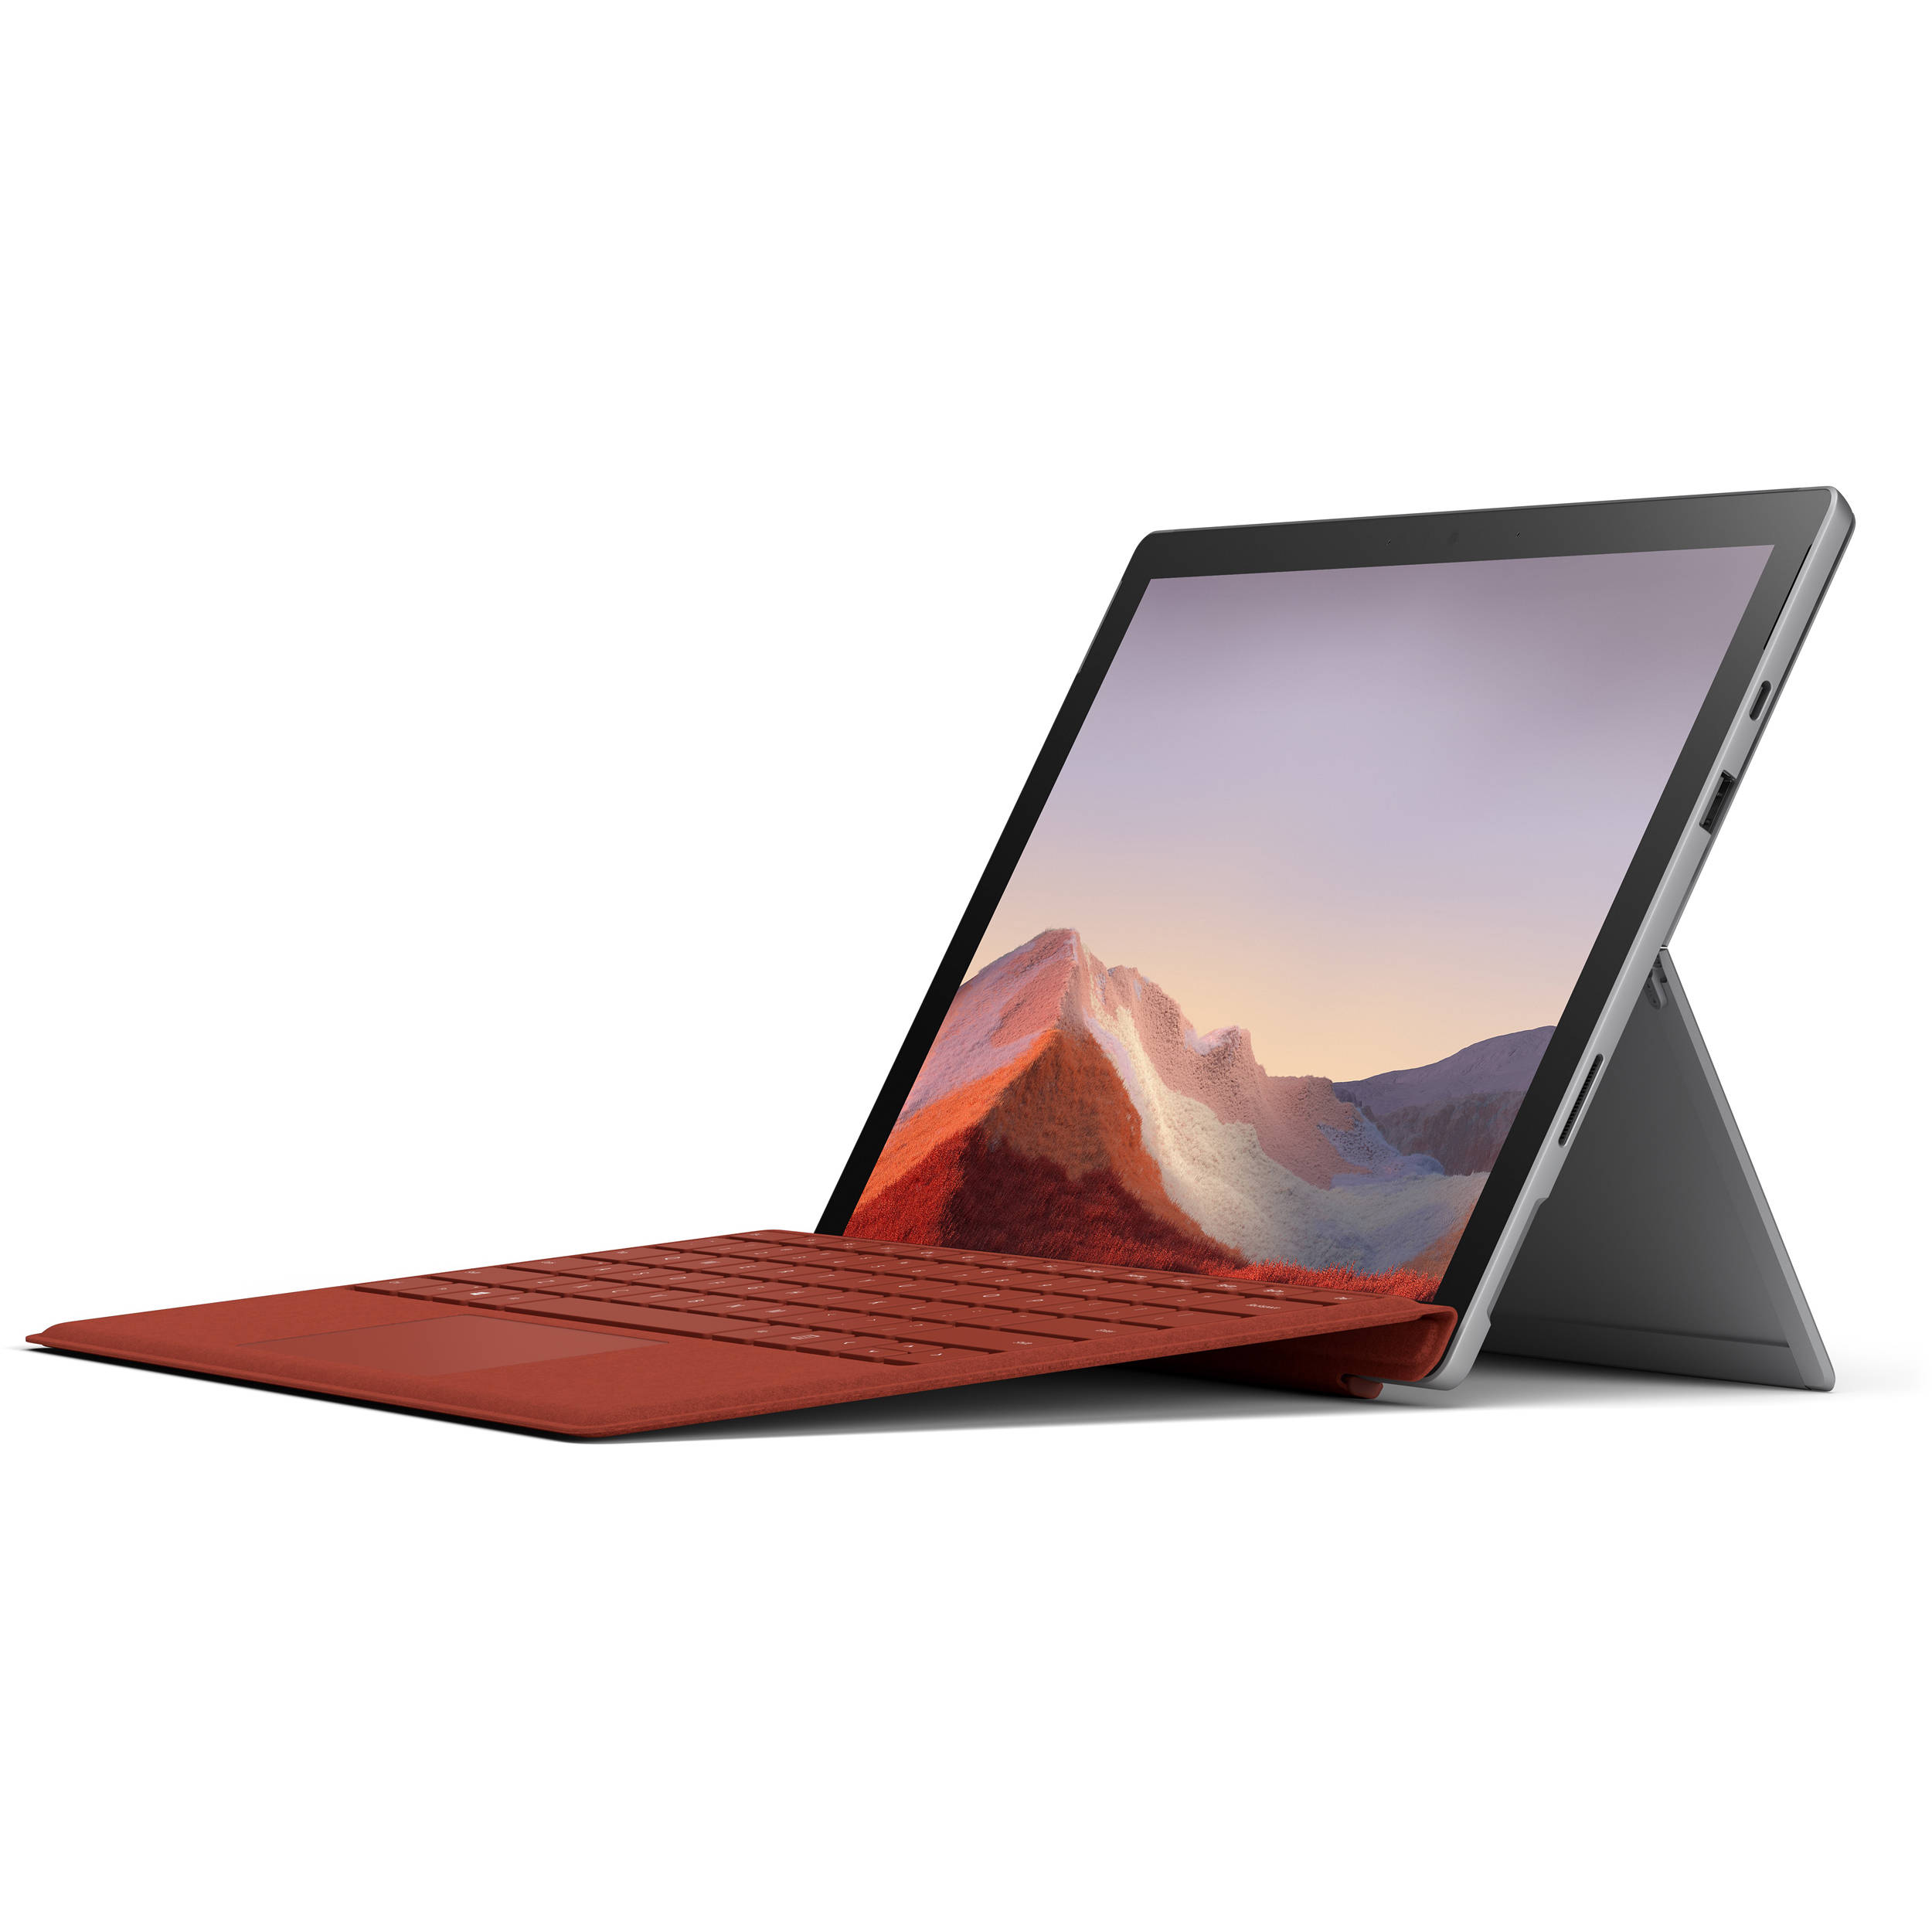 Résultat de recherche d'images pour "microsoft Surface Pro 7"